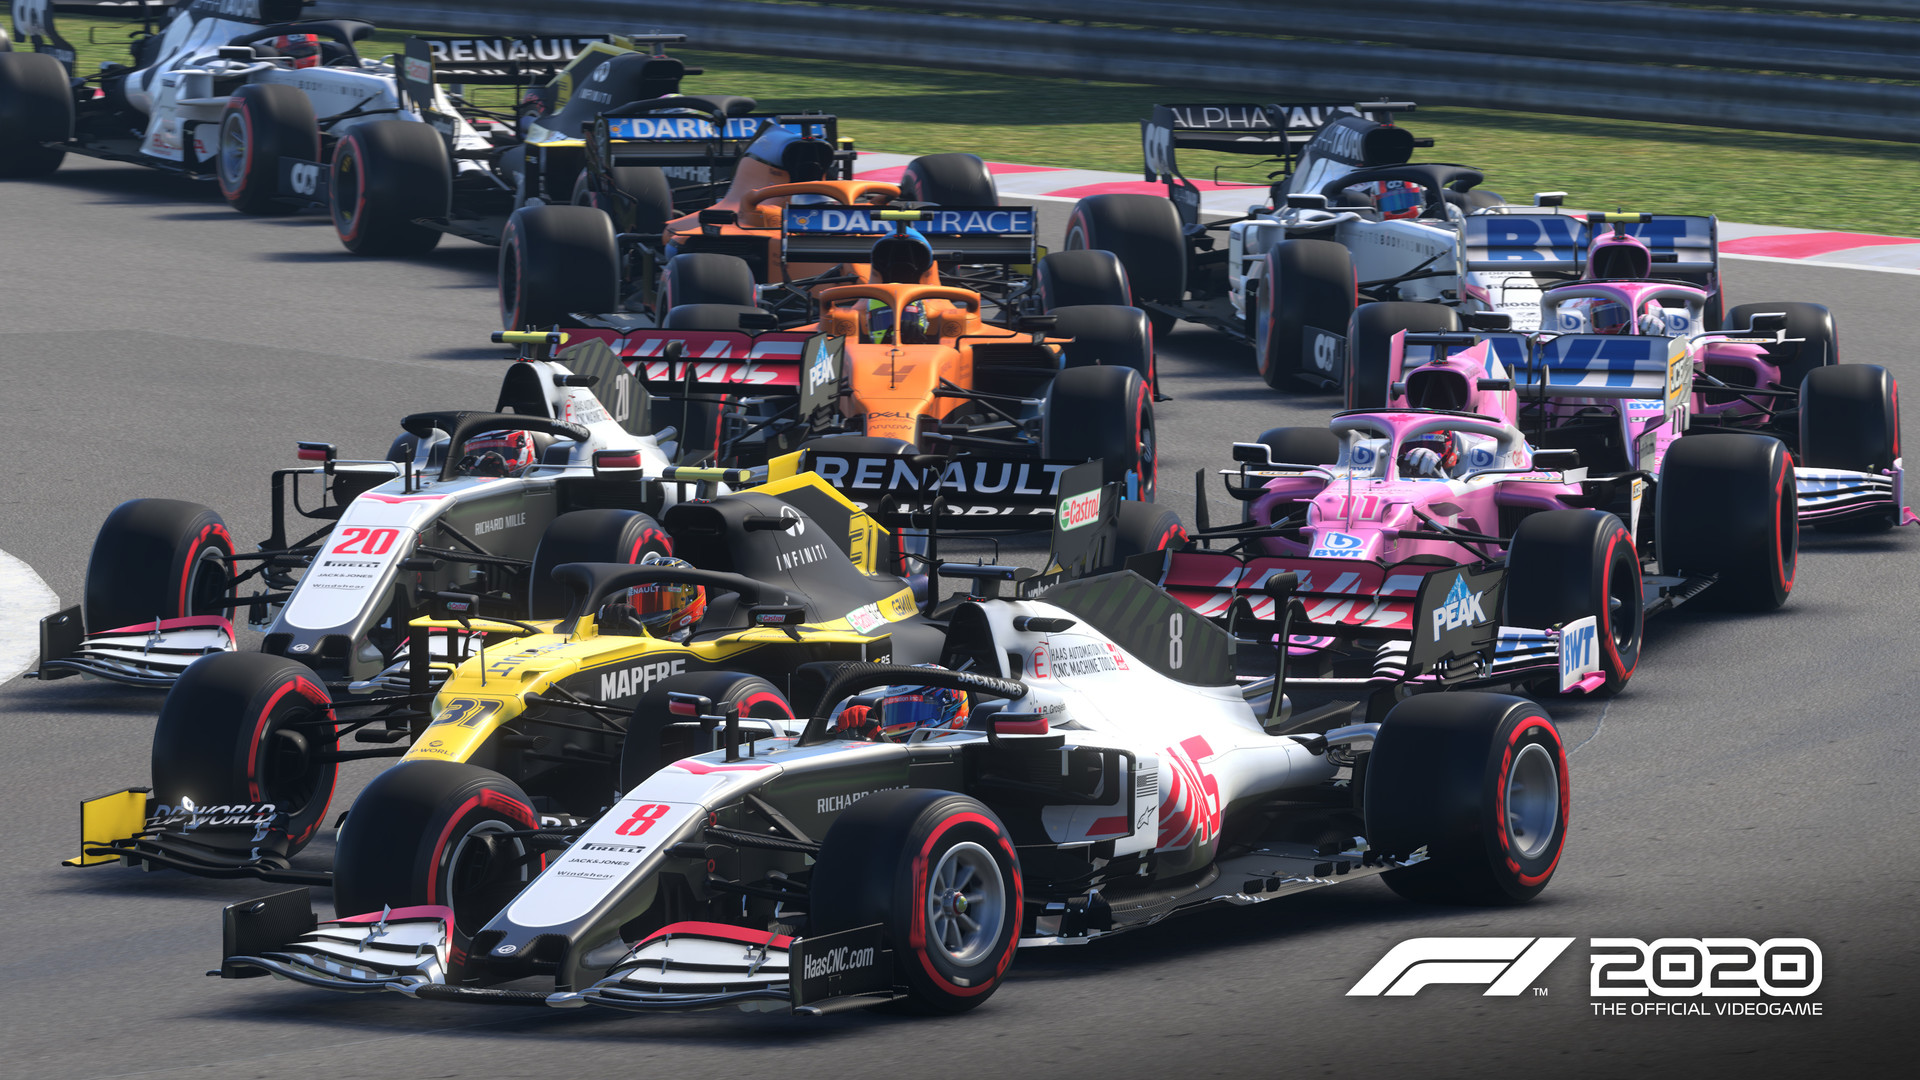 F1® 2020 on Steam